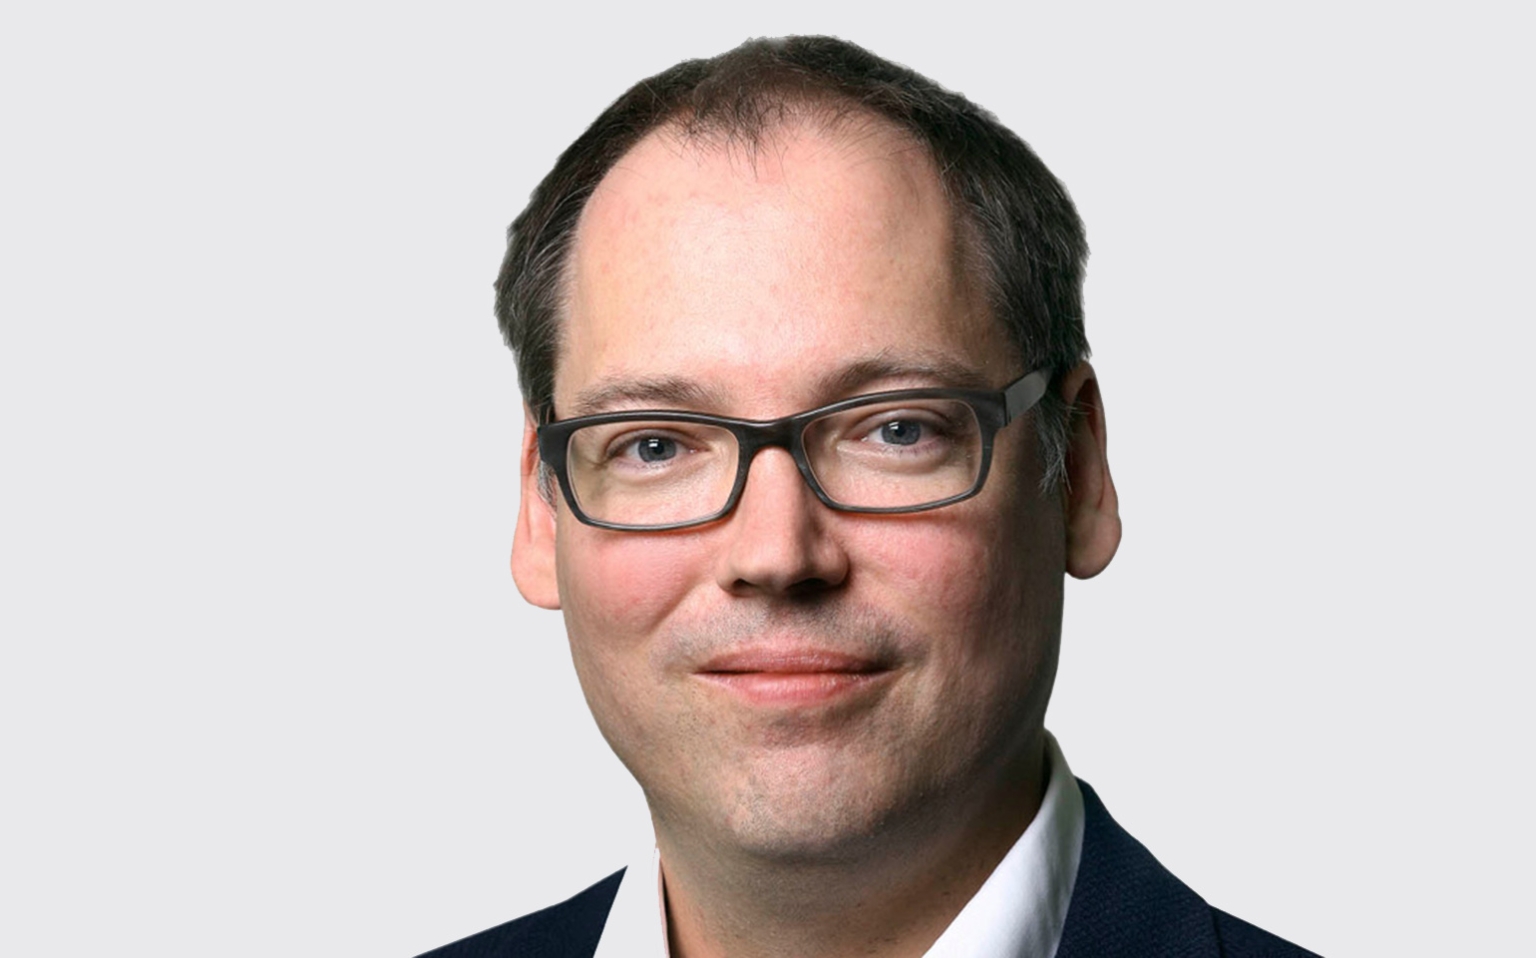 Le 1er janvier 2020, André Schnidrig deviendra le nouveau CEO du groupe Alpiq.